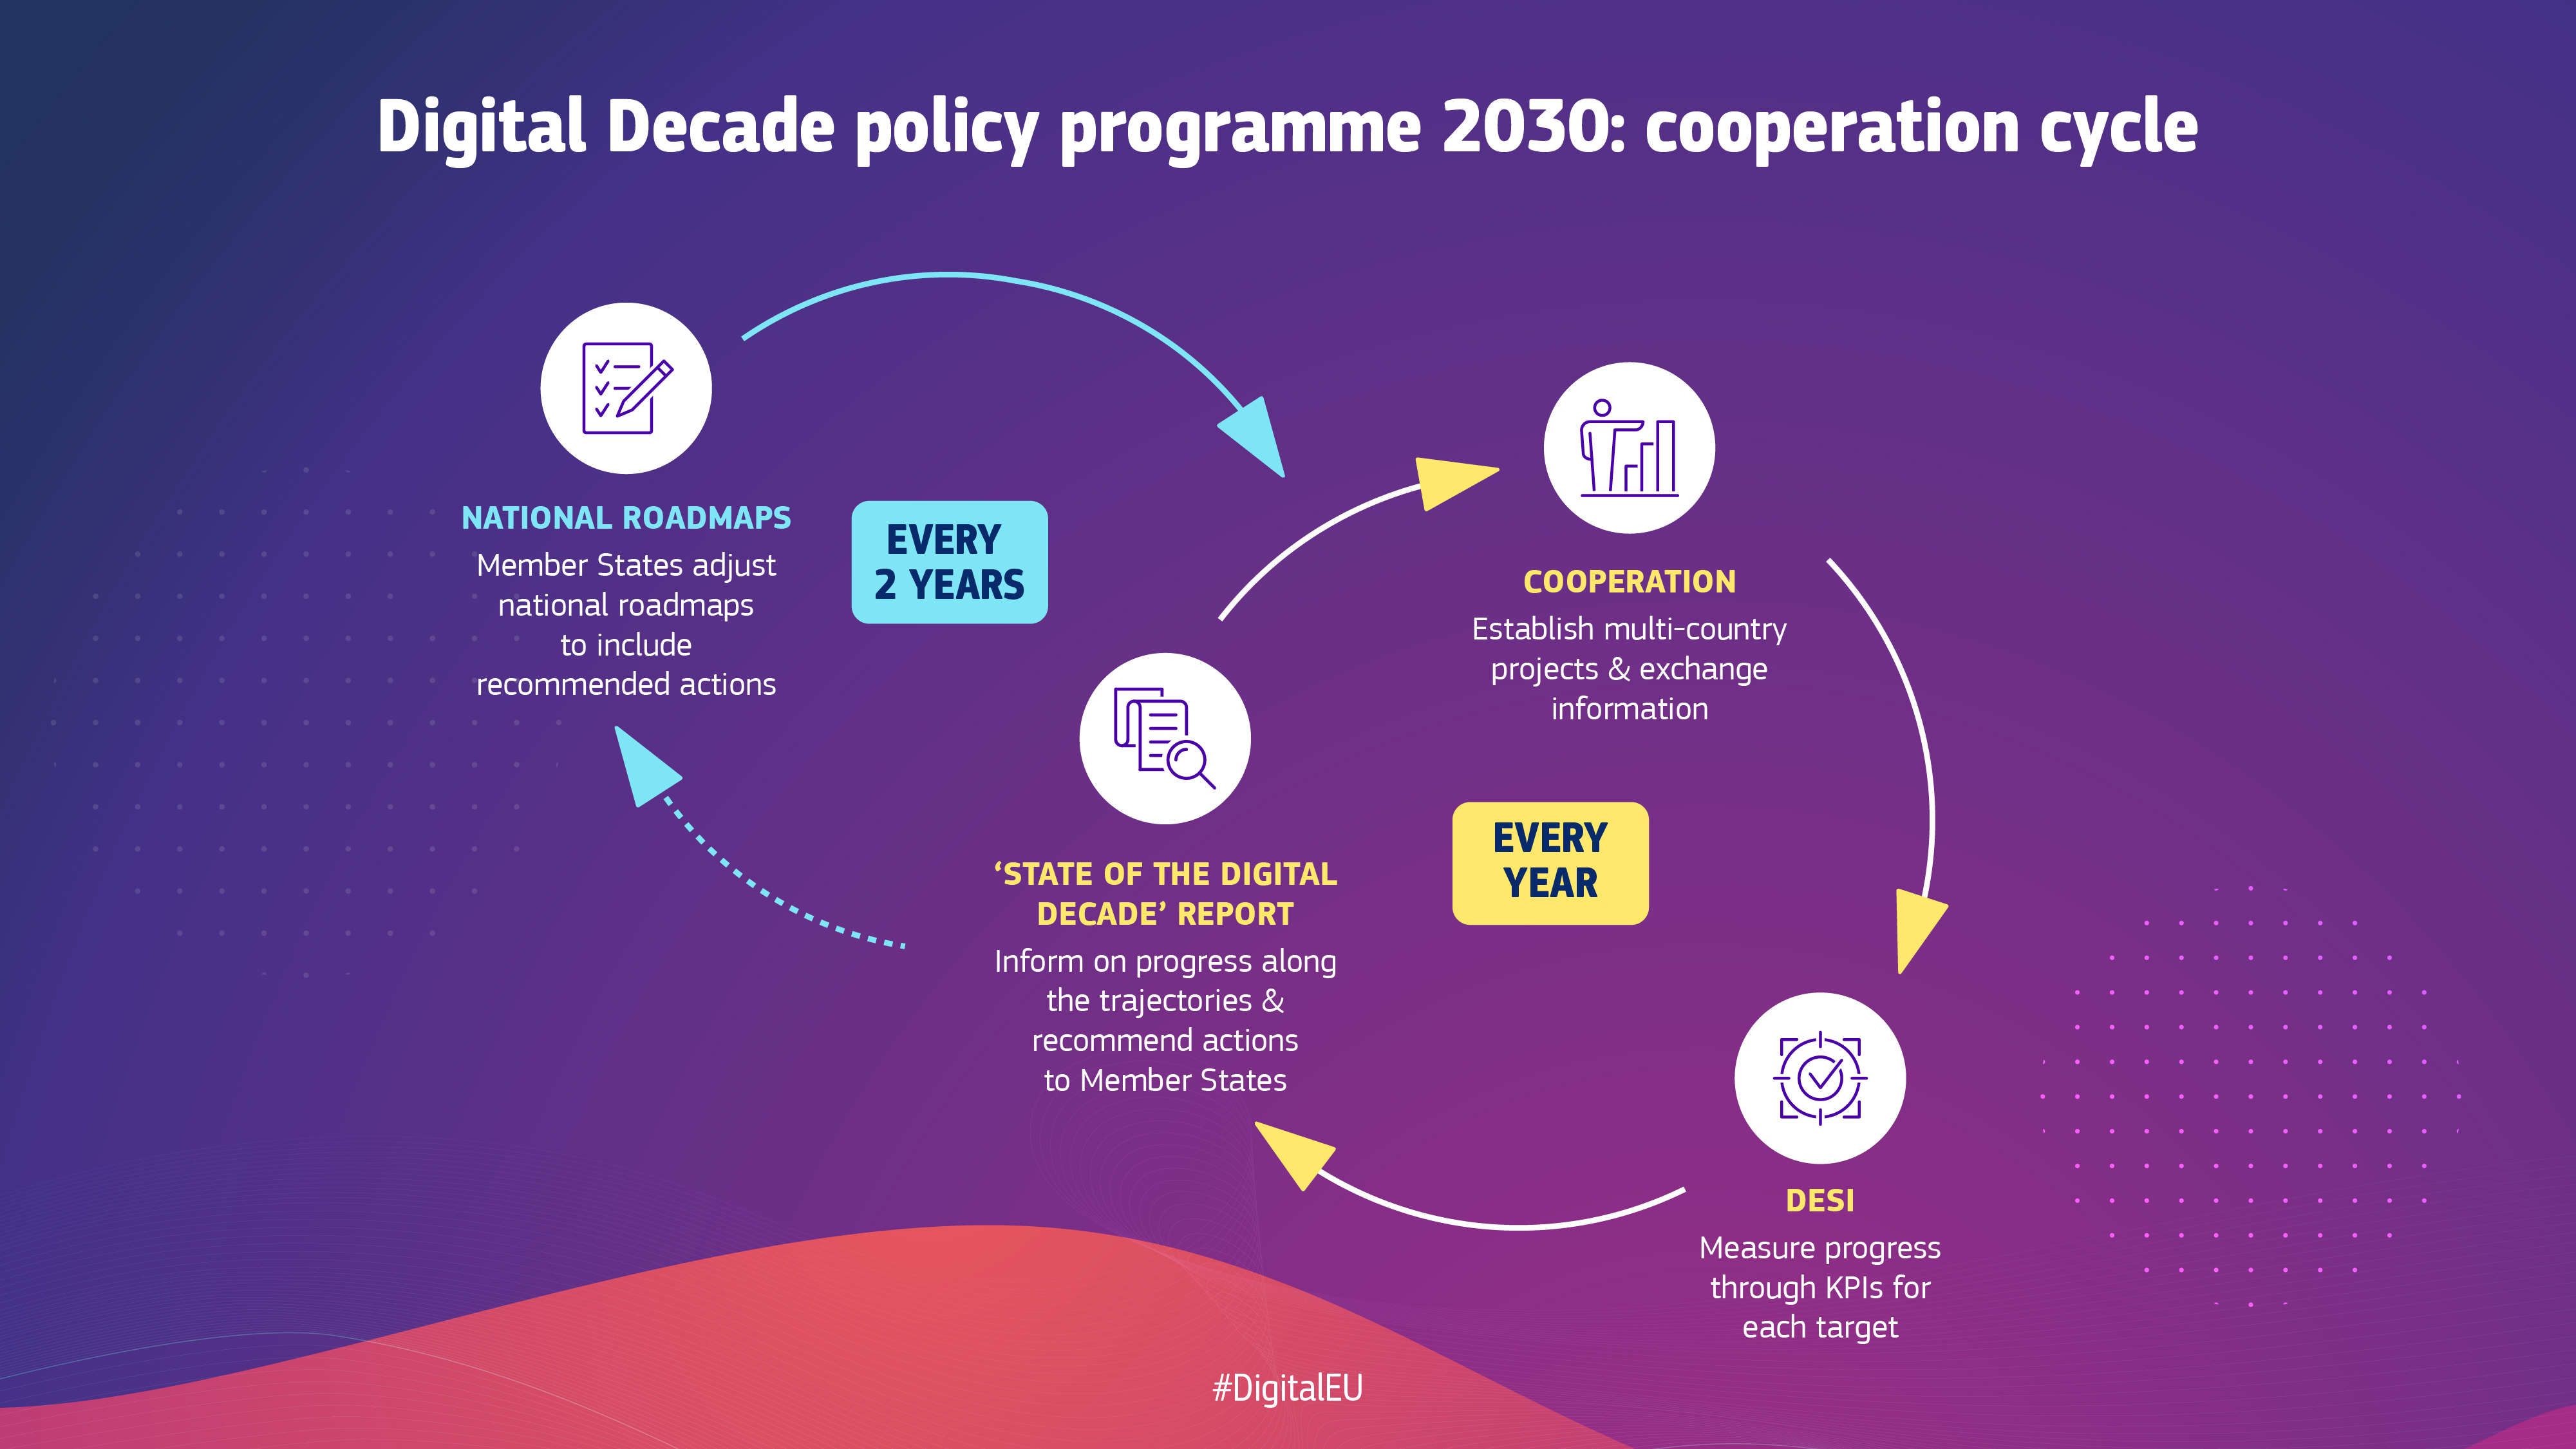 κύκλος συνεργασίας του προγράμματος πολιτικής